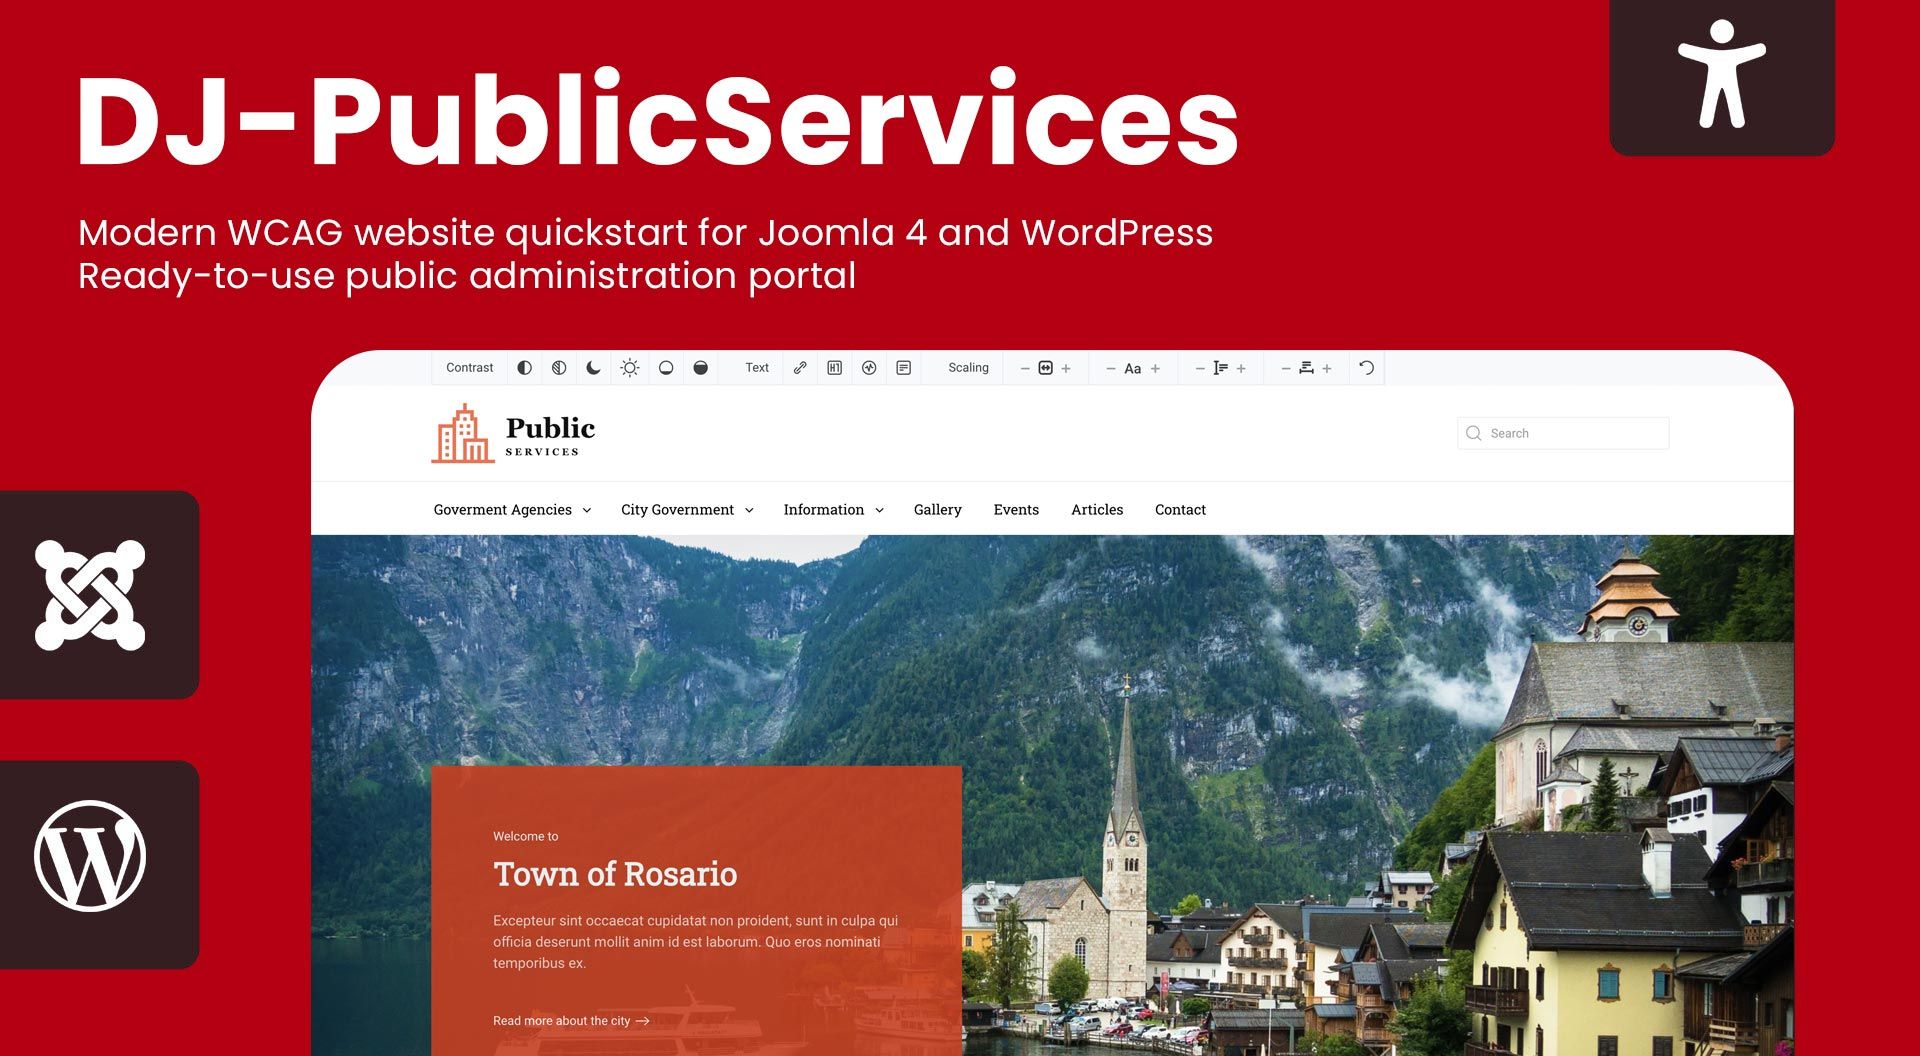 Meet PublicServices - the WCAG website Quickstart for Joomla 4 & Wordpress